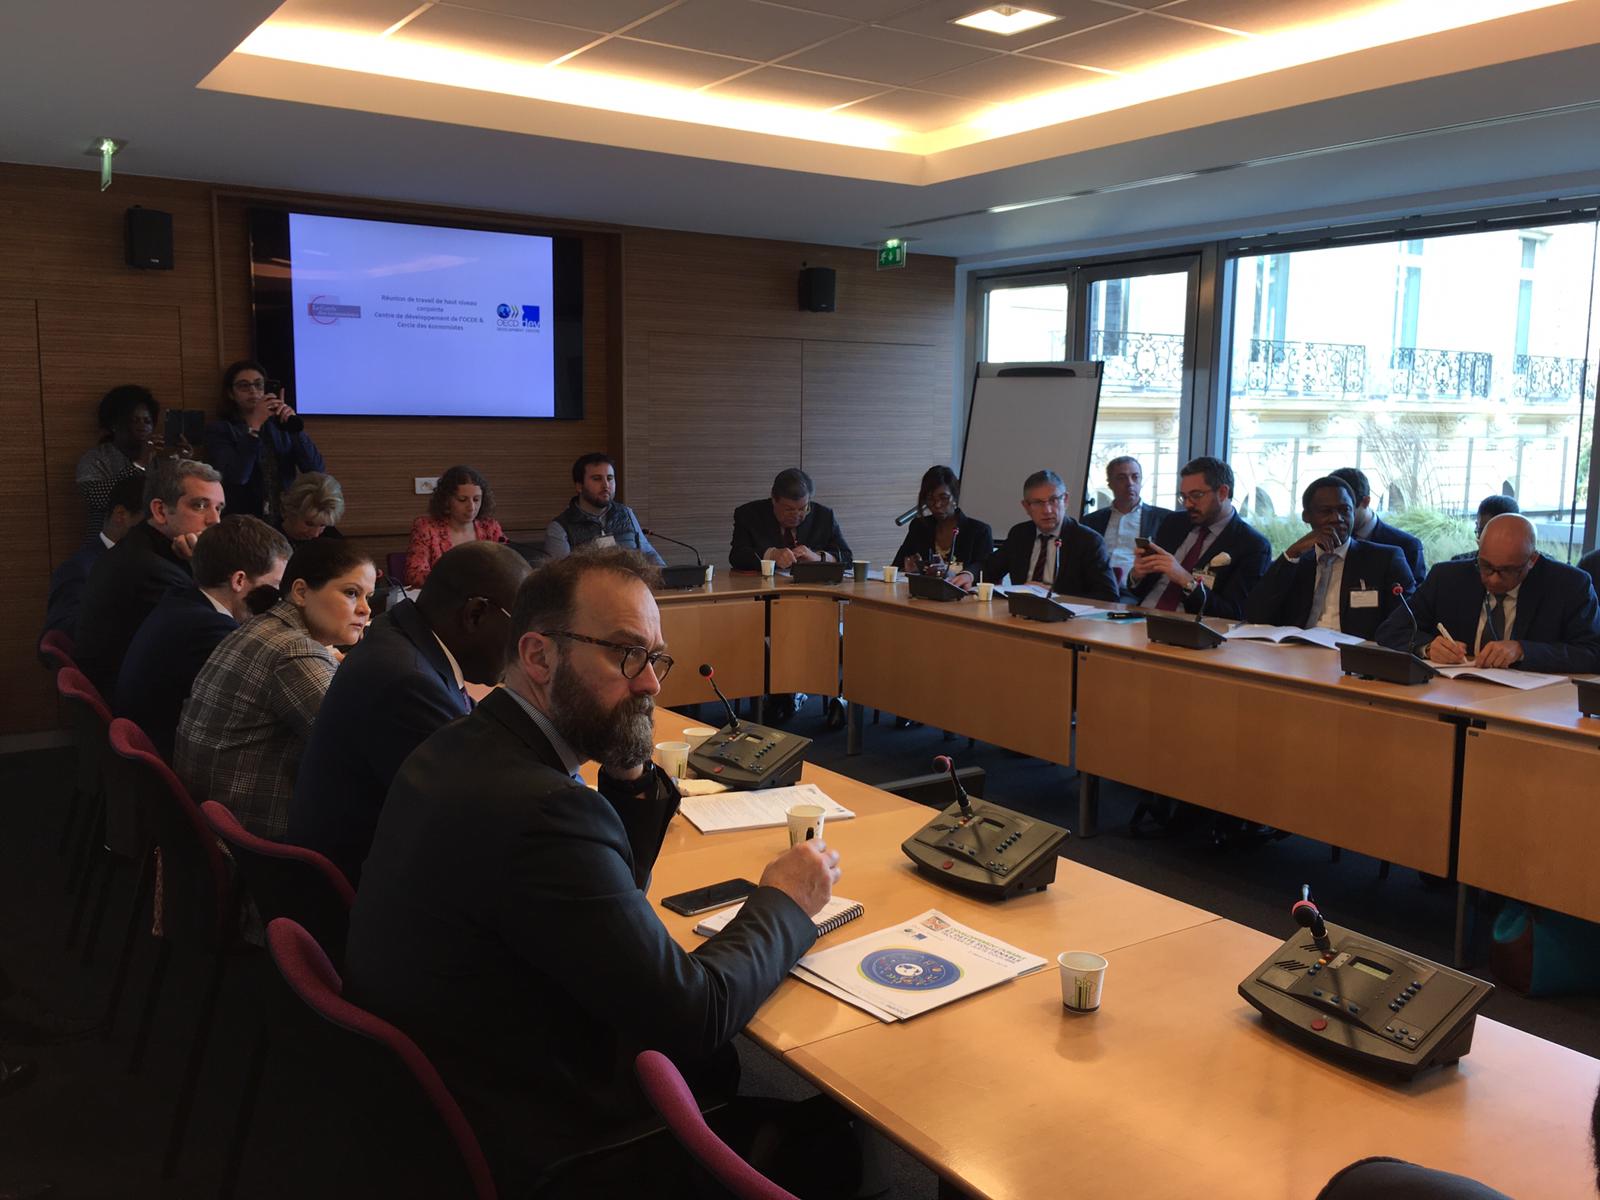 Investissement en Afrique : Le Cercle des économistes pose le débat  à Paris  avec la participation du ministre du plan Sénégal émergent, Cheikh Kanté.